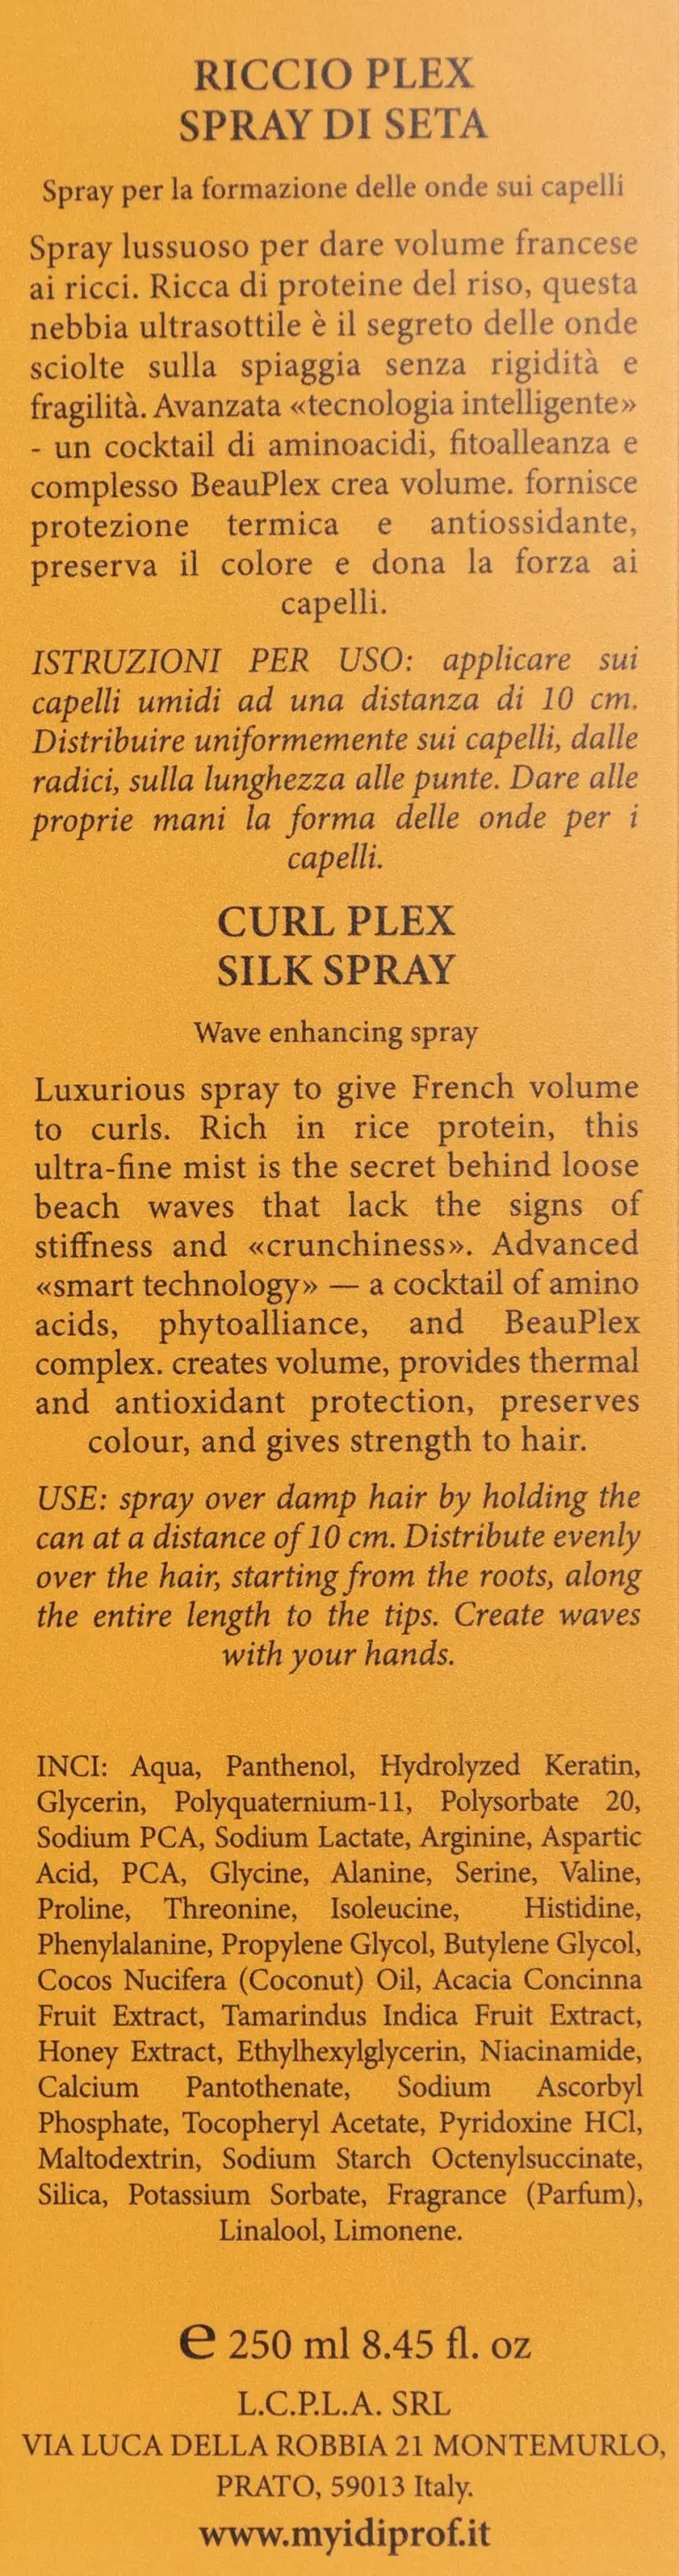 Спрей для формирования волн на волосах CURL PLEX SILK SPRAY, 250 мл - фото №4